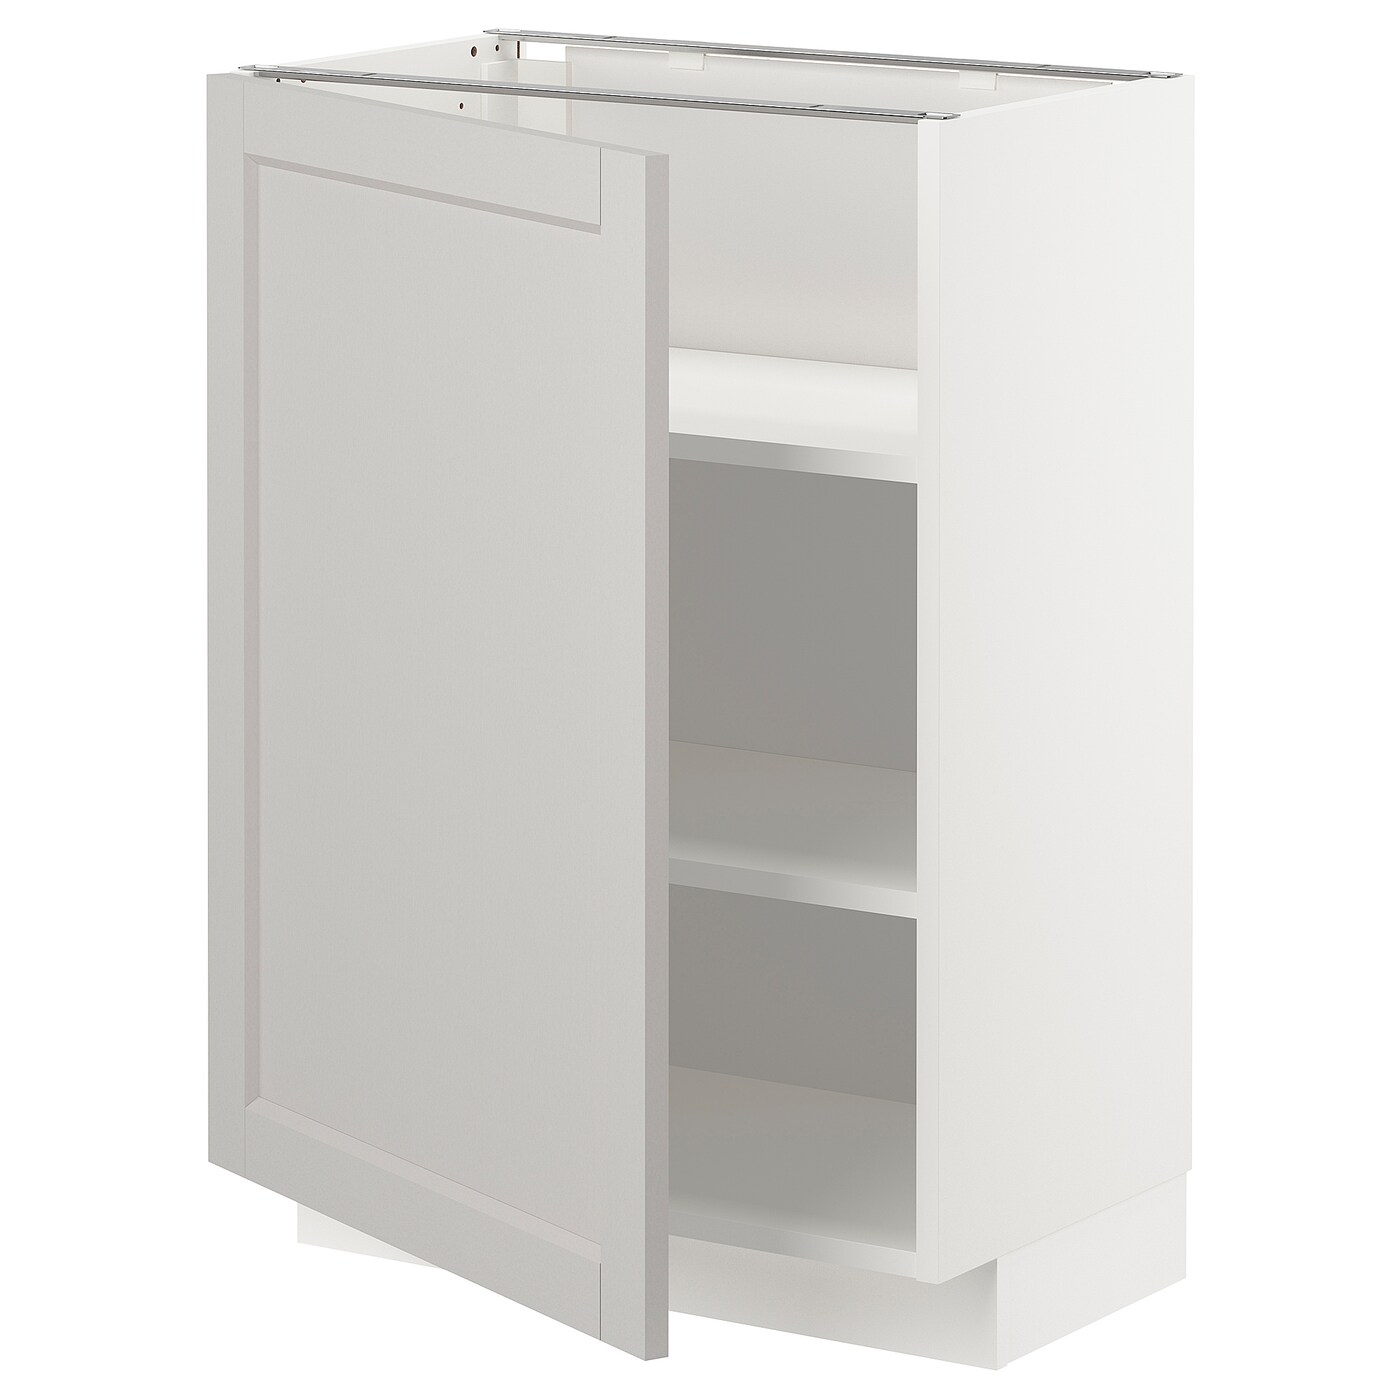 Напольный шкаф - IKEA METOD, 88x39,5x60см, белый/светло-серый, МЕТОД ИКЕА